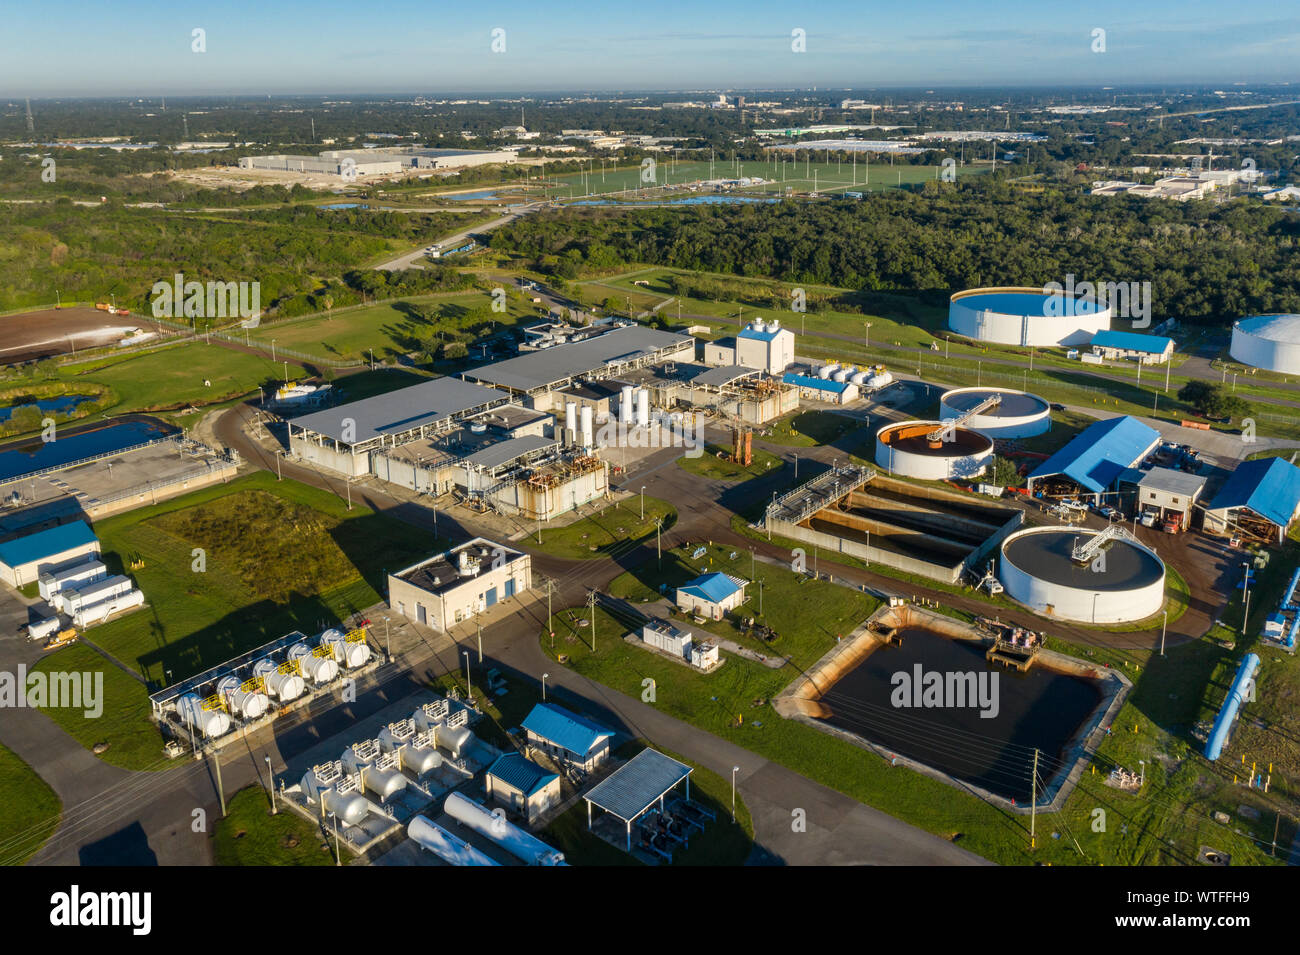 Vue aérienne de l'usine régionale de traitement des eaux de surface de Tampa Bay, Floride. Banque D'Images